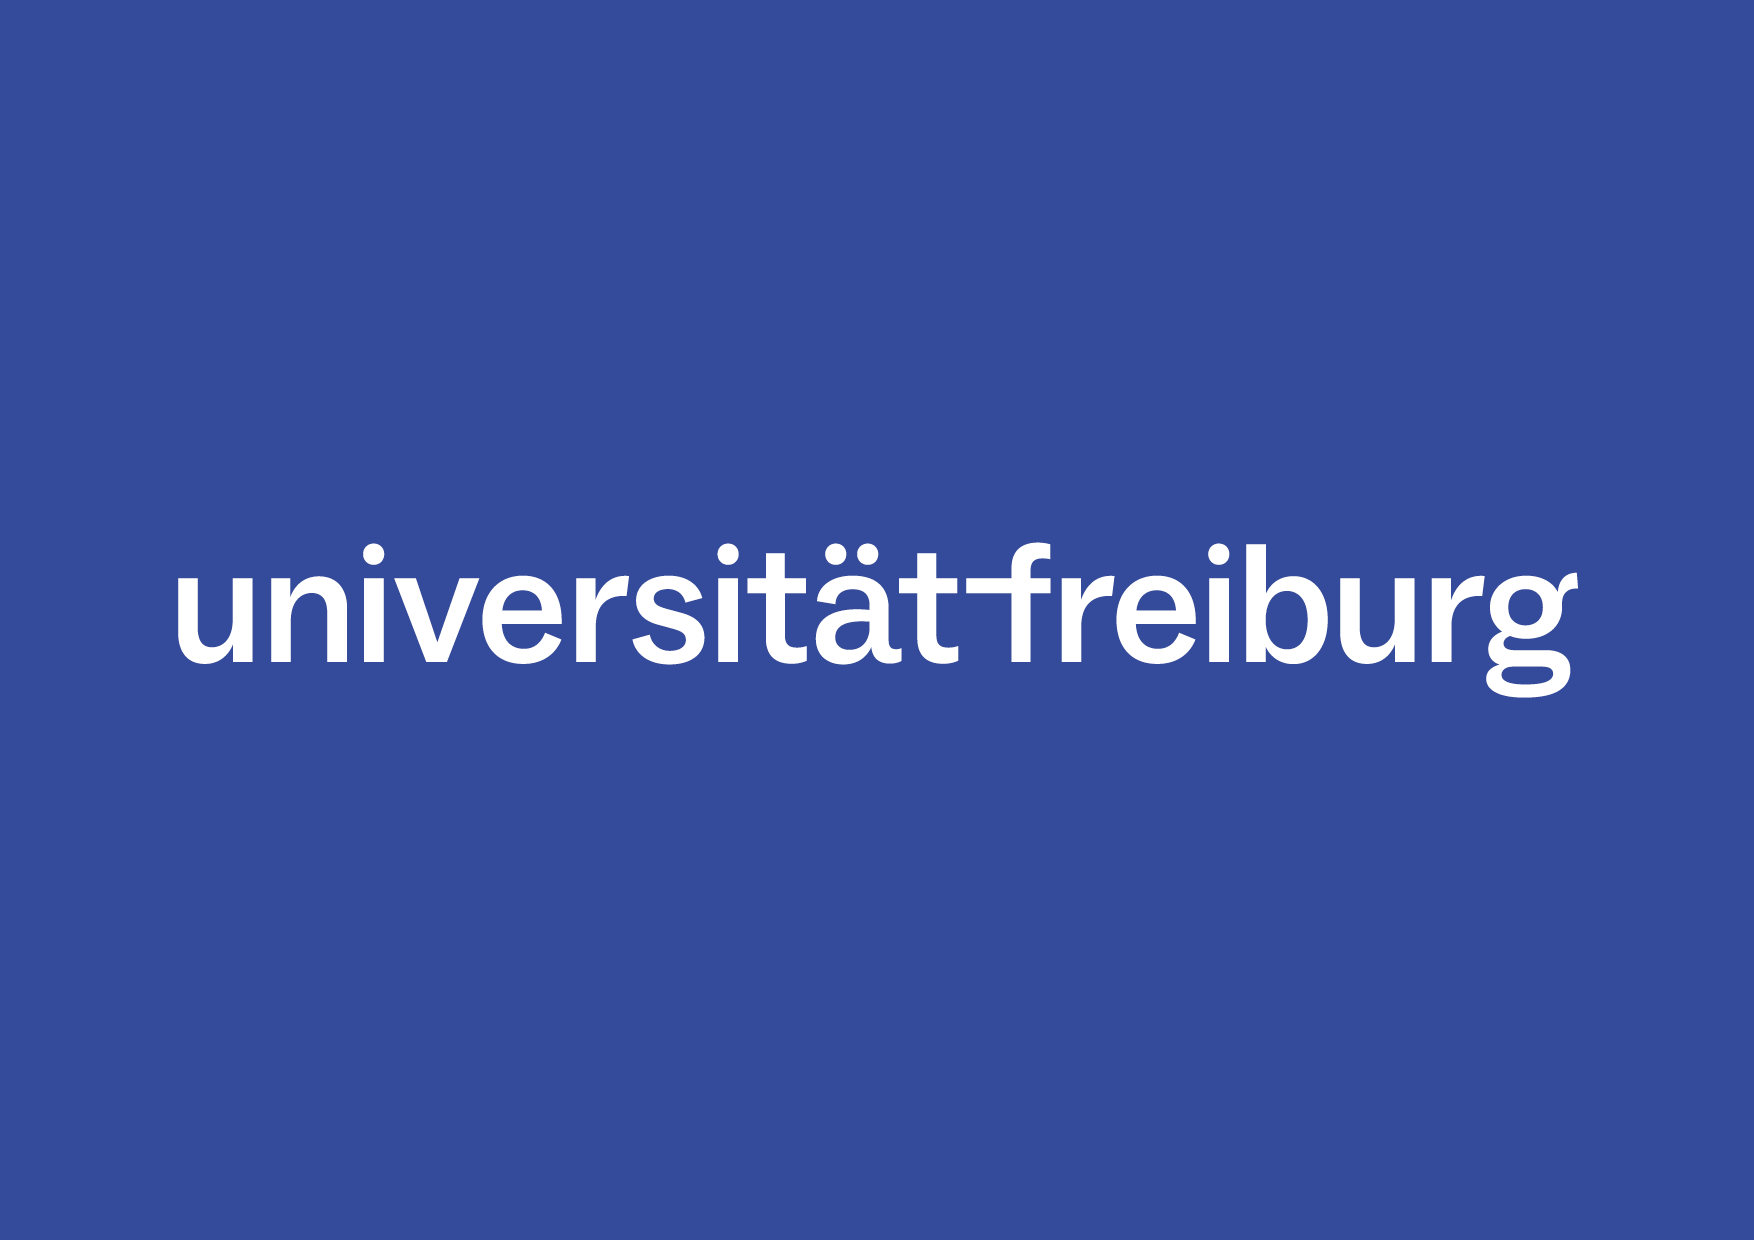 Weiße Wortmarke der Universität-Freiburg auf blauem Hintergrund